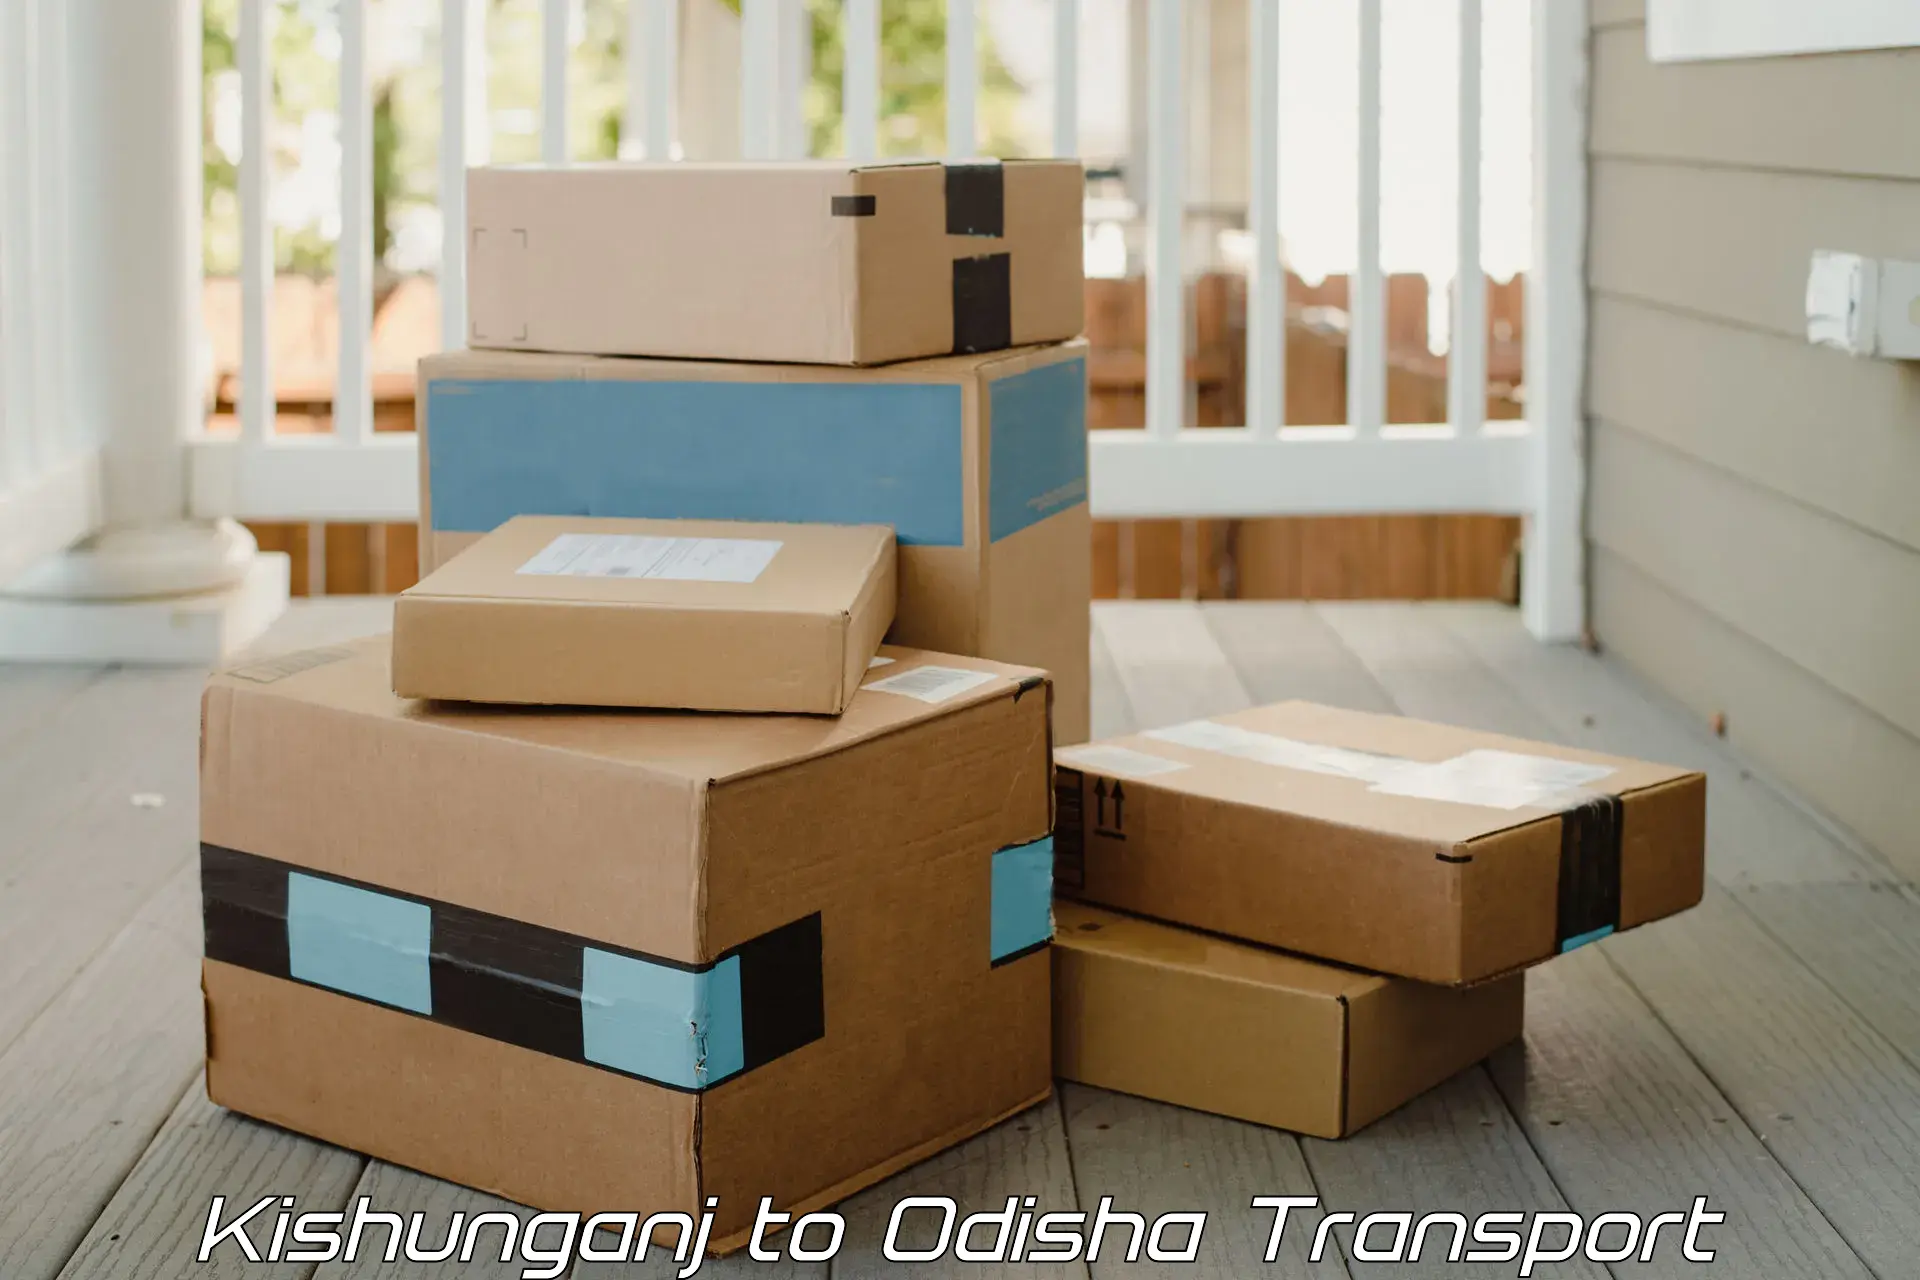 International cargo transportation services Kishunganj to Odisha